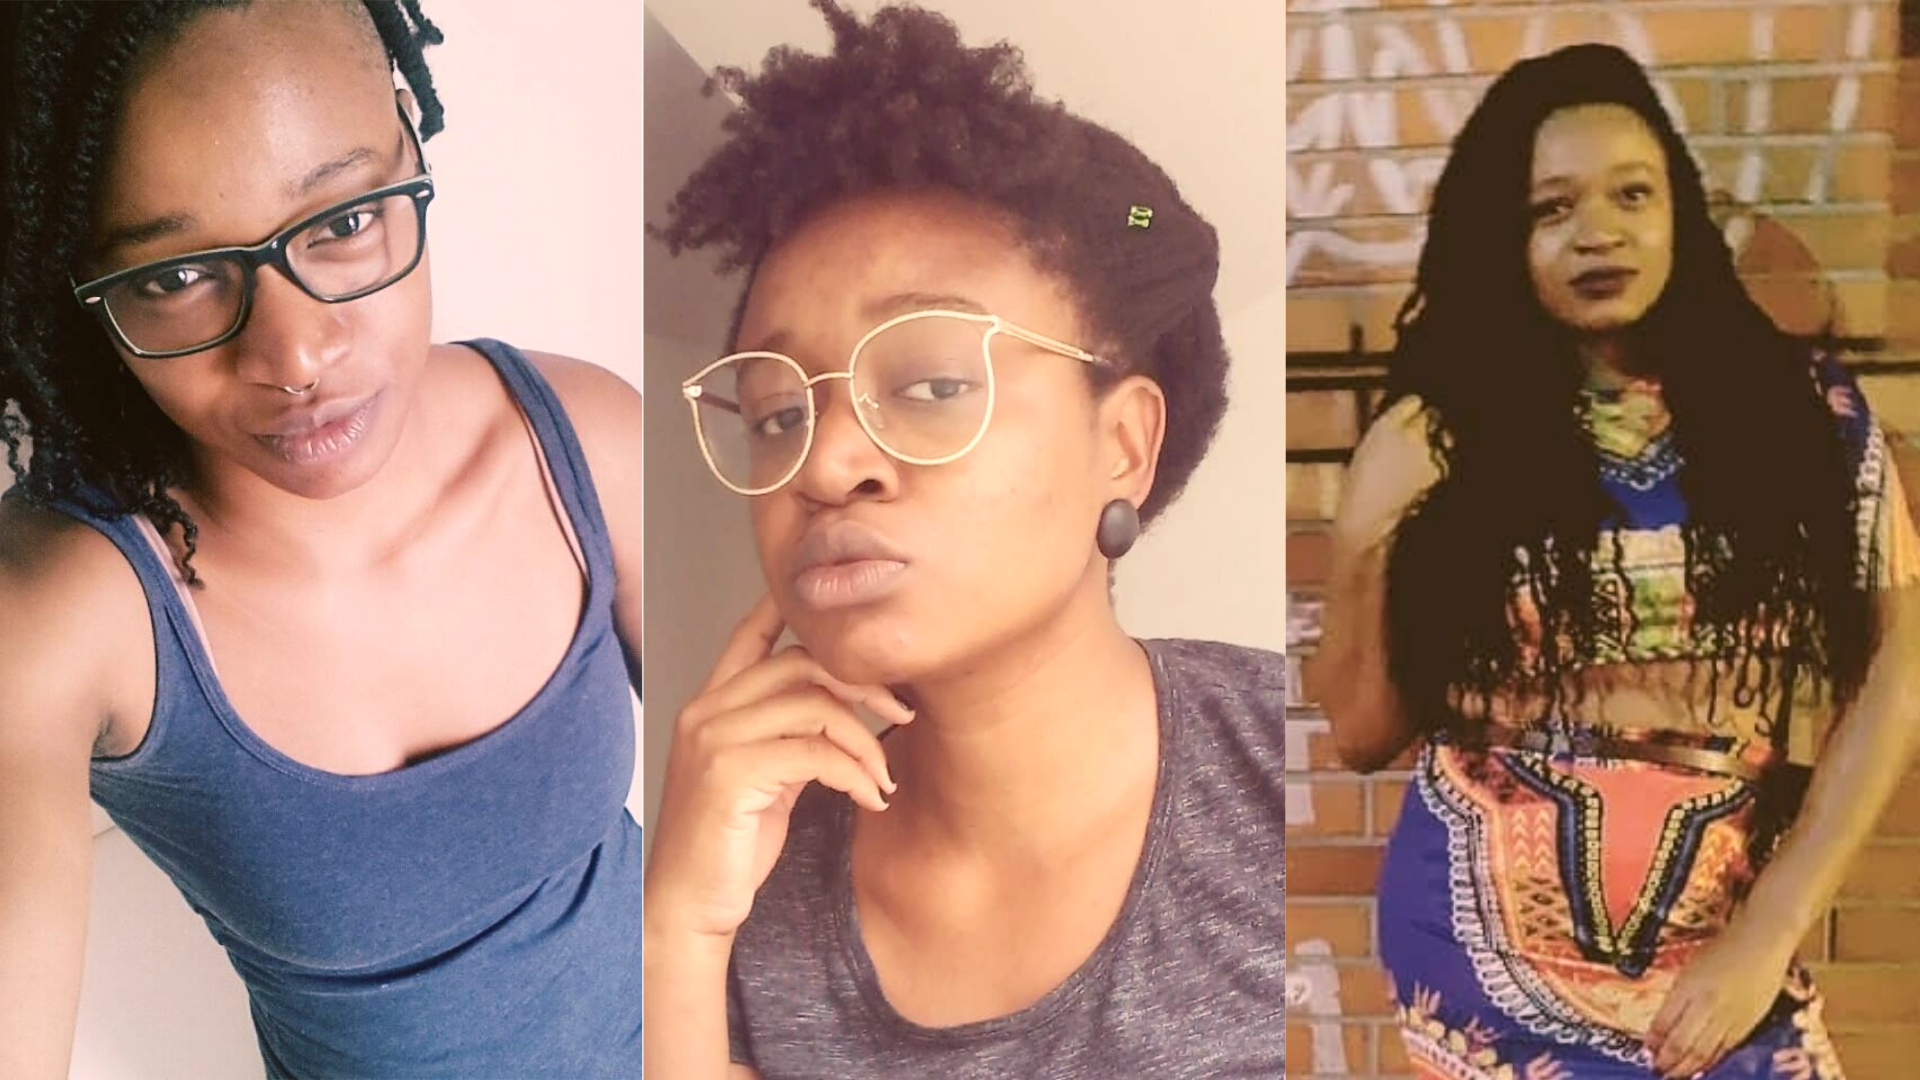 Superadas as frustrações com o seu cabelo, a psicóloga Joann Emawodia assumiu o seu cabelo natural e o utiliza de diversas e criativas formas para se expressar (Instagram)